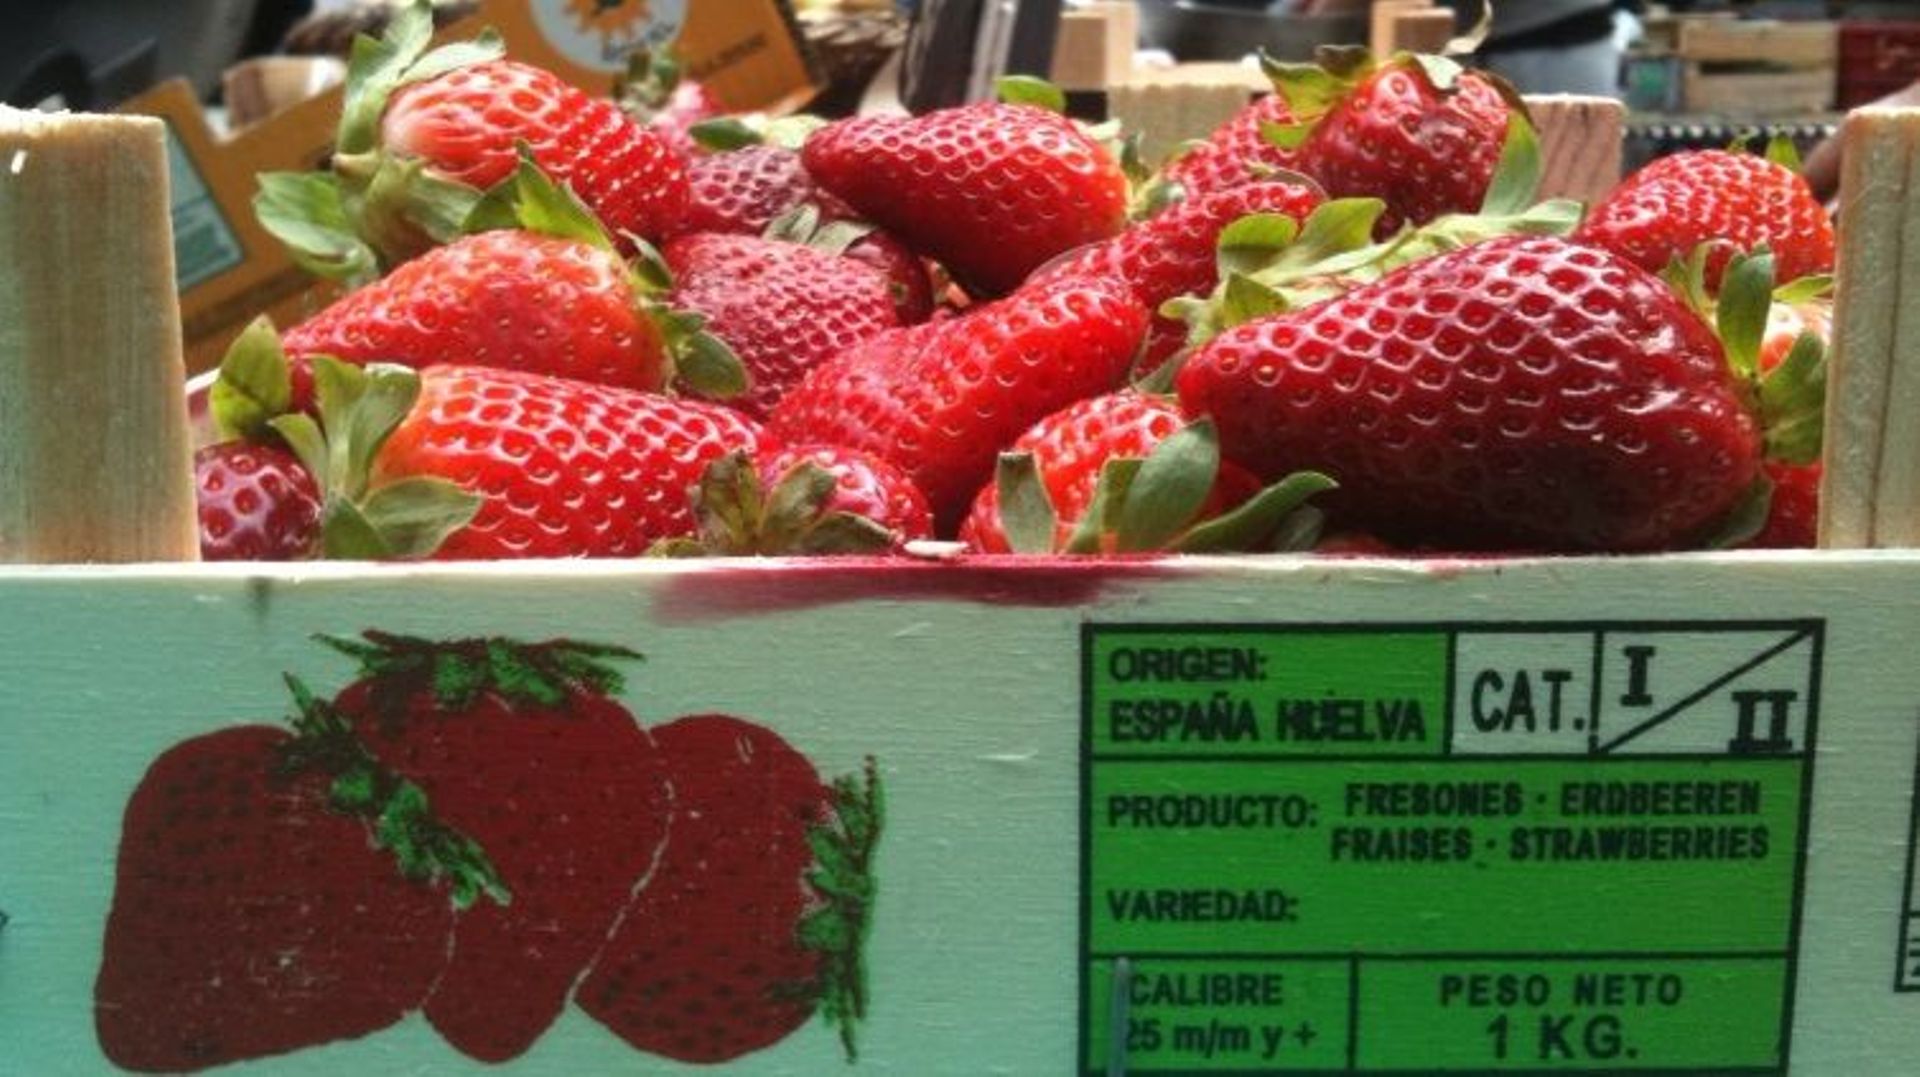 Les fraises espagnoles, qu’on trouve chez nous, sont-elles dangereuses pour la santé?